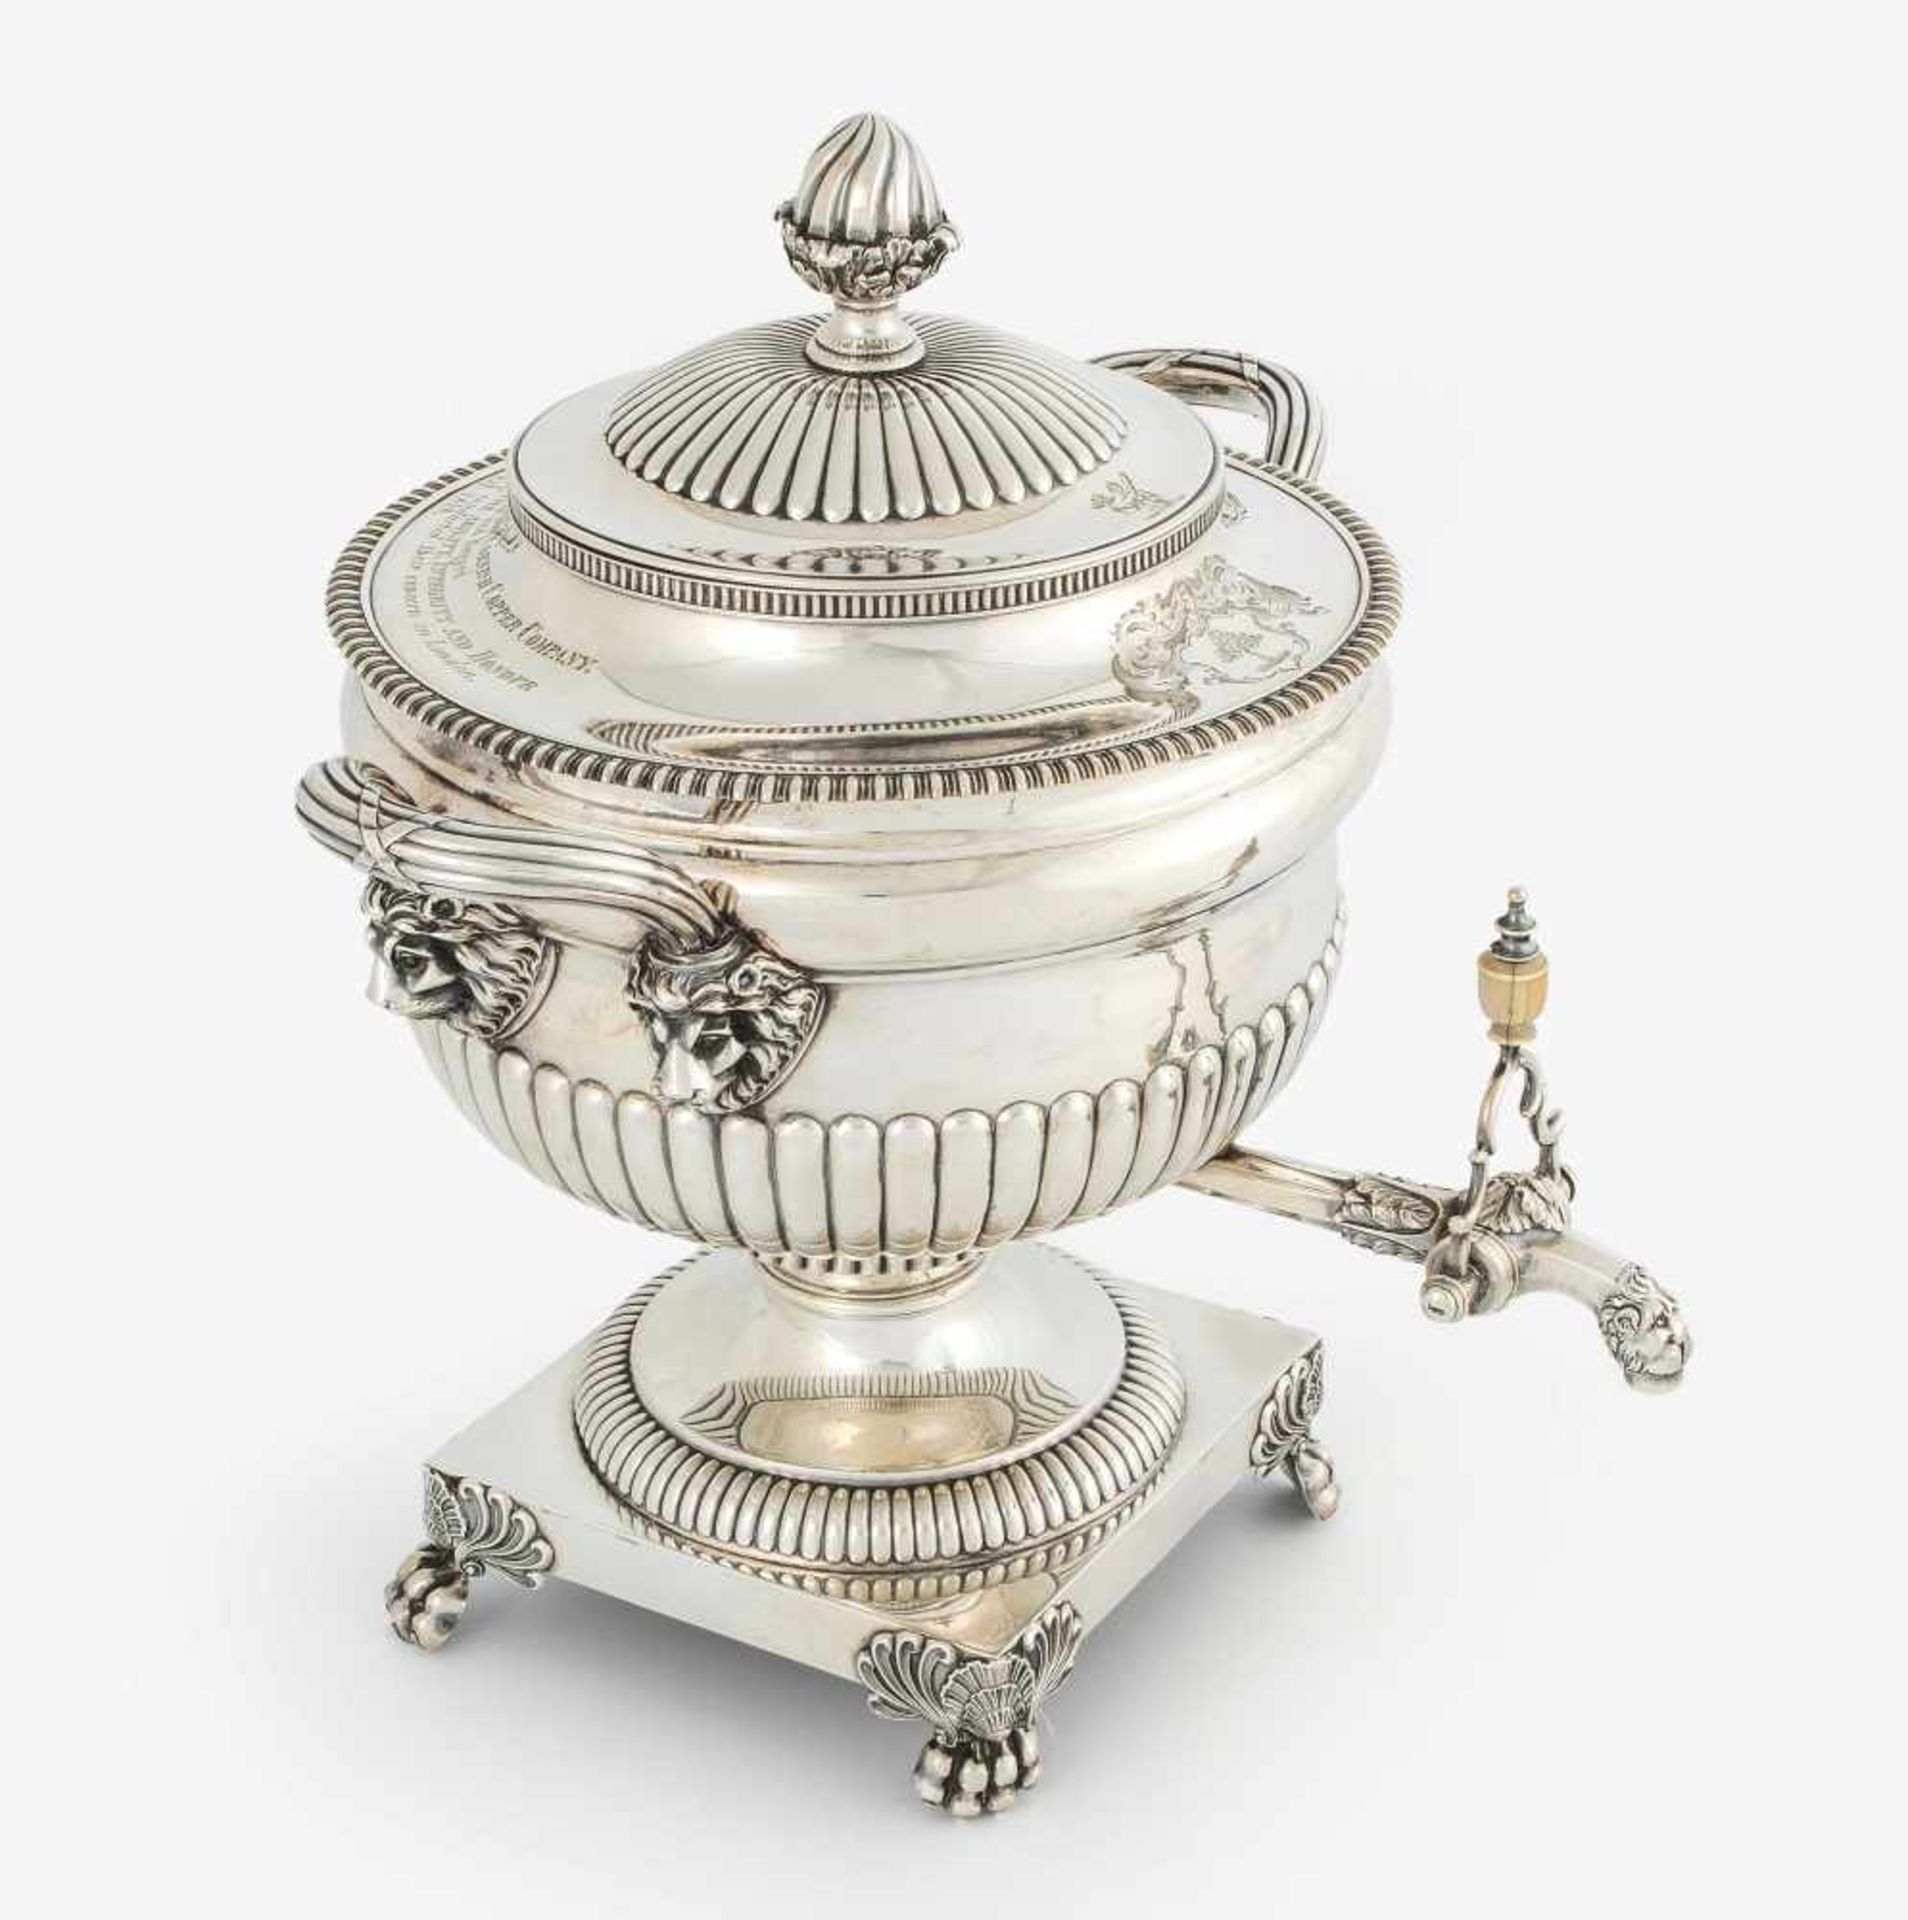 Grosser WasserbehälterLondon, 1817. Silber. Meistermarke WE. Quadratischer Sockel auf